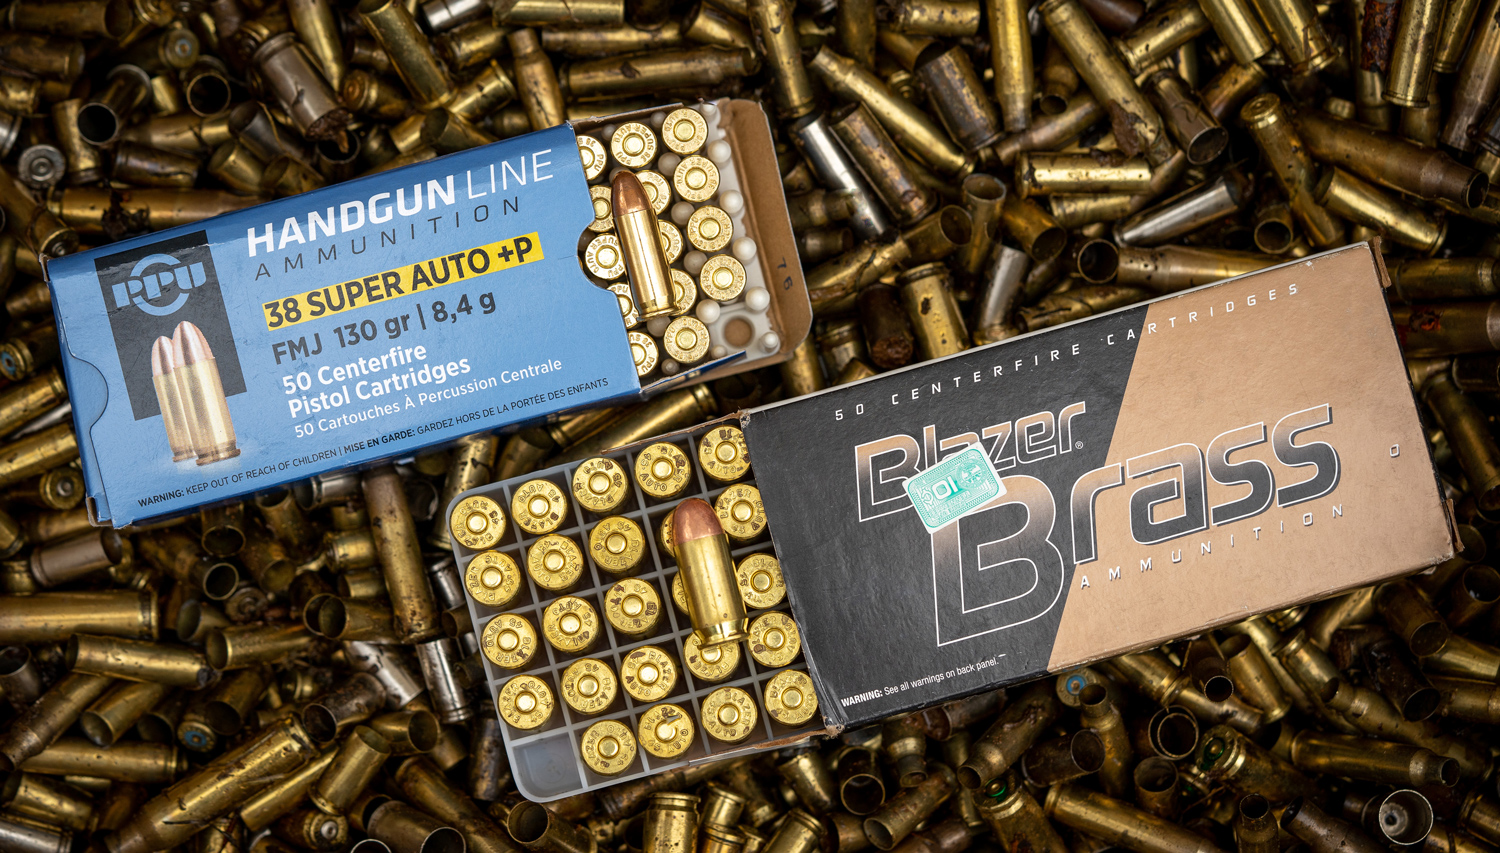 38 super vs 45 acp boxes of ammo